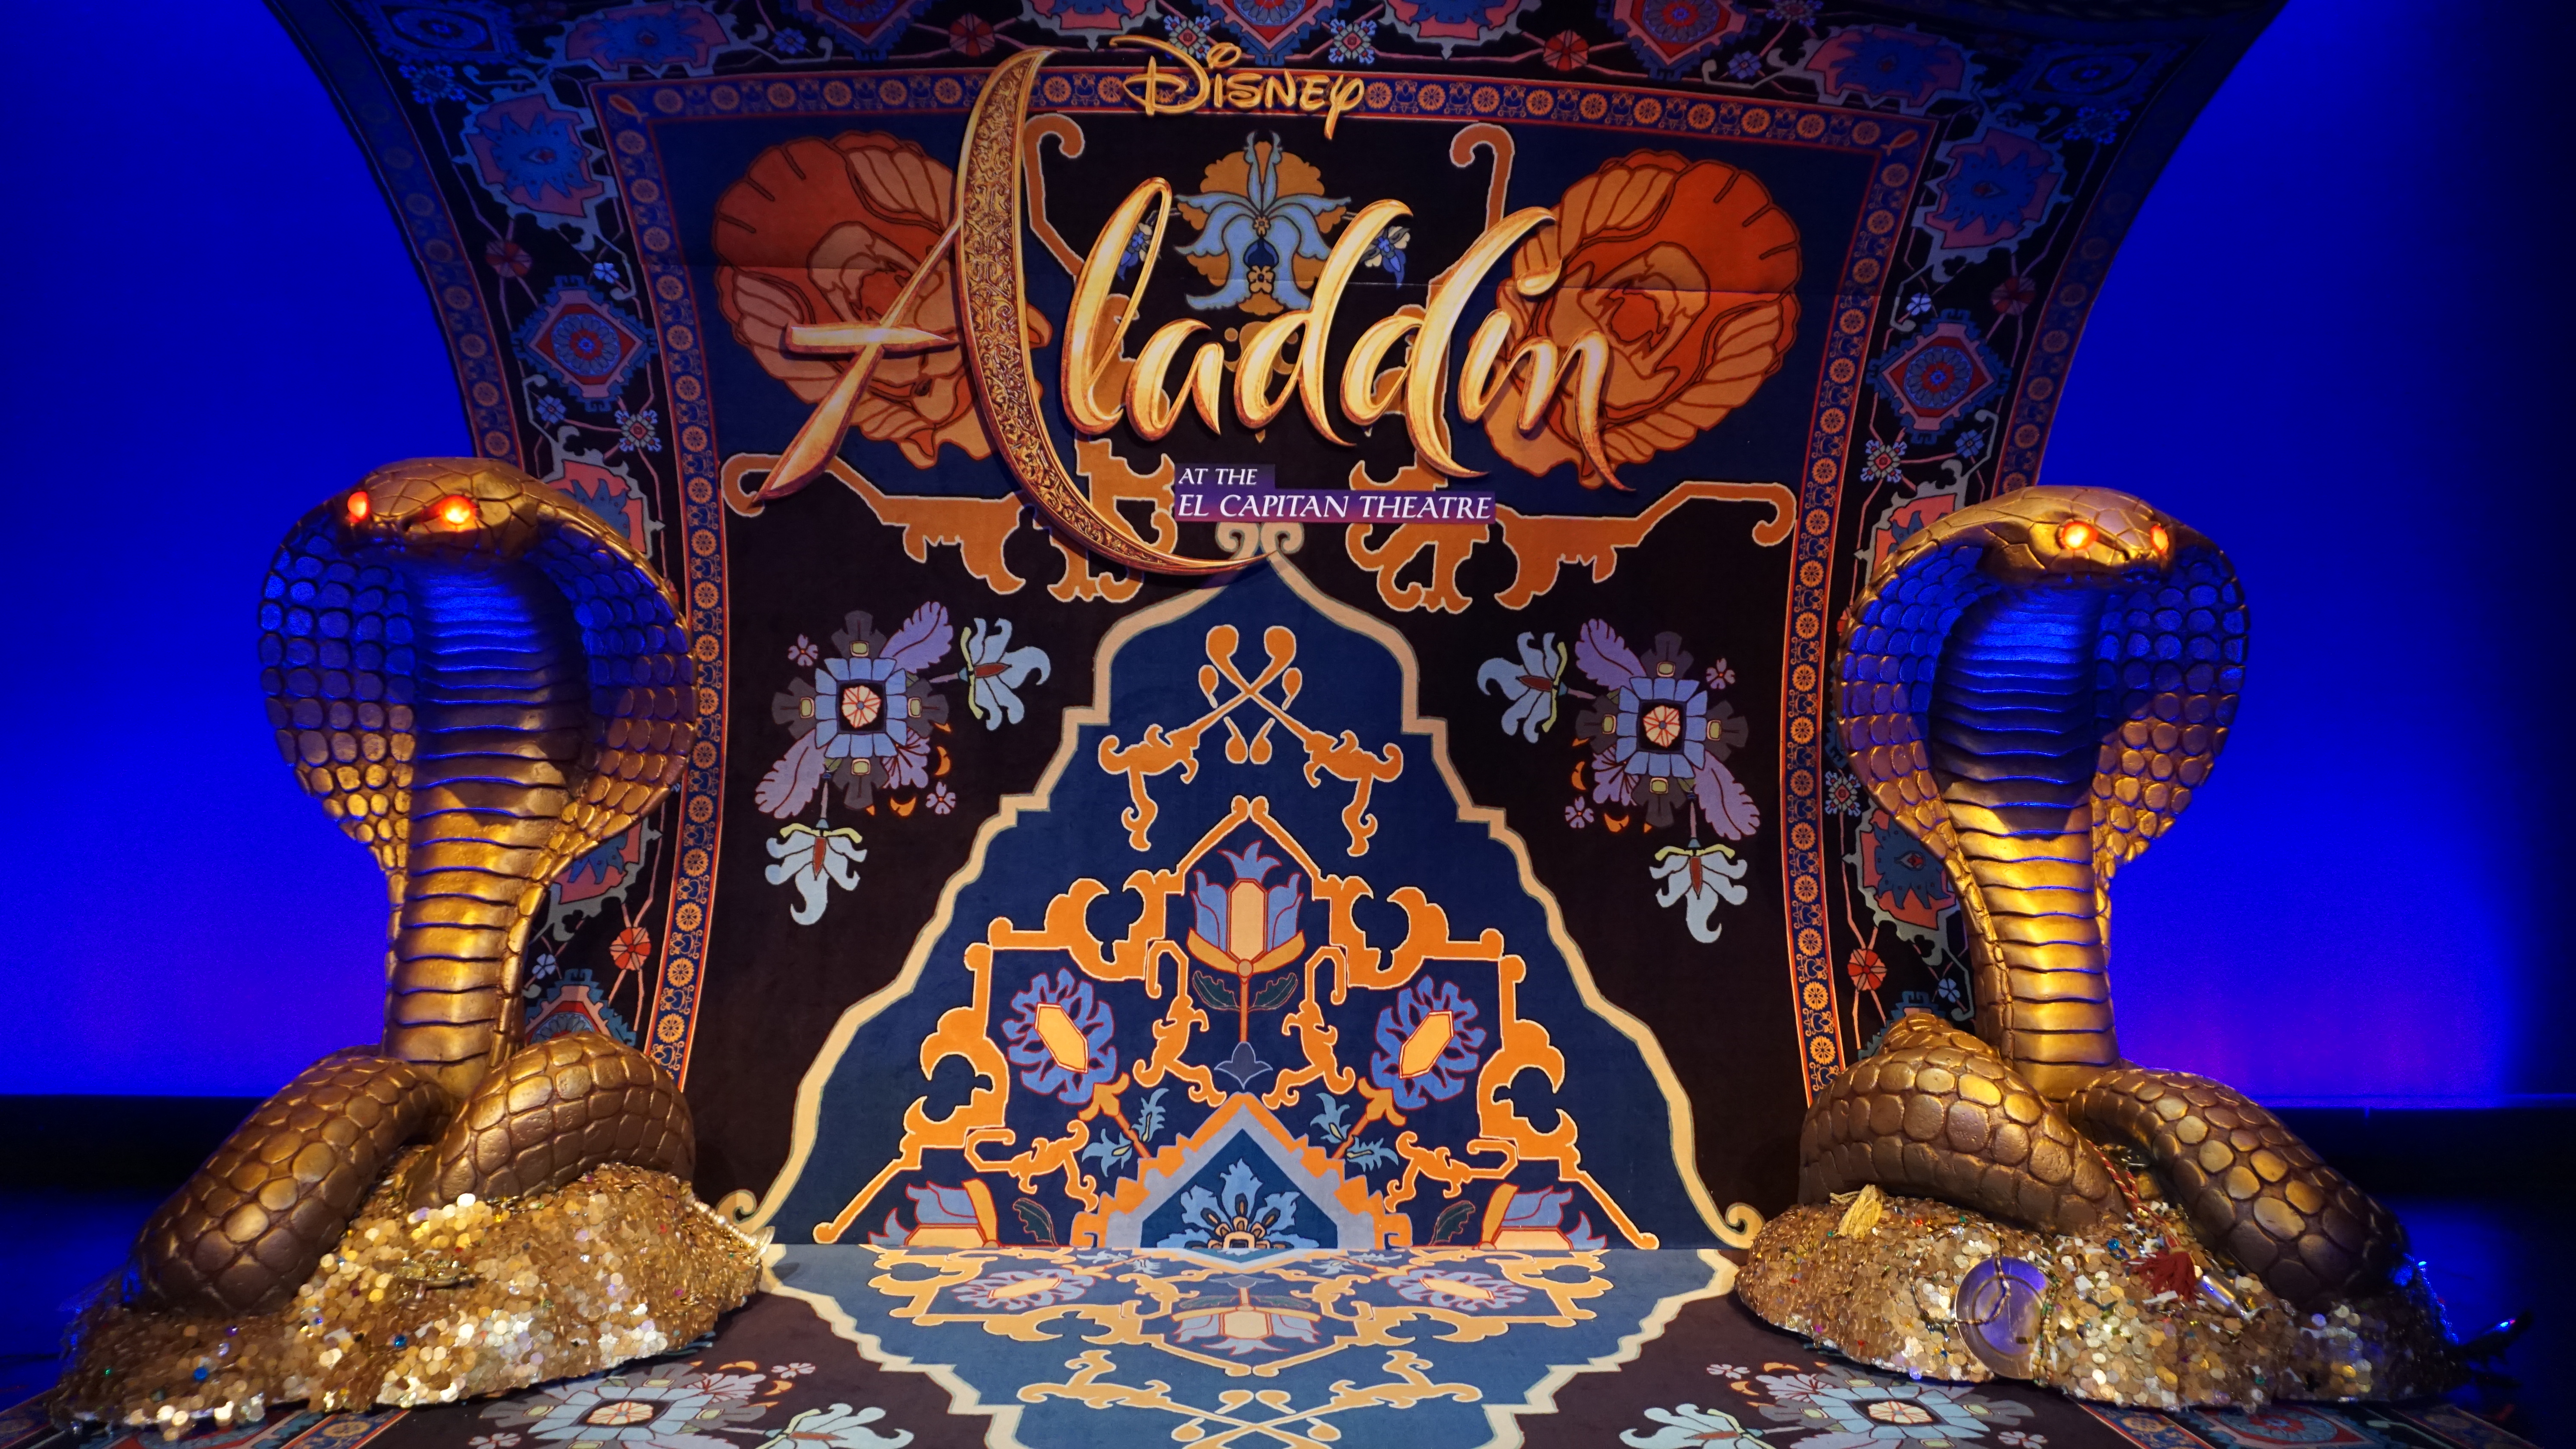 Disney’s Aladdin at the El Capitan Theatre